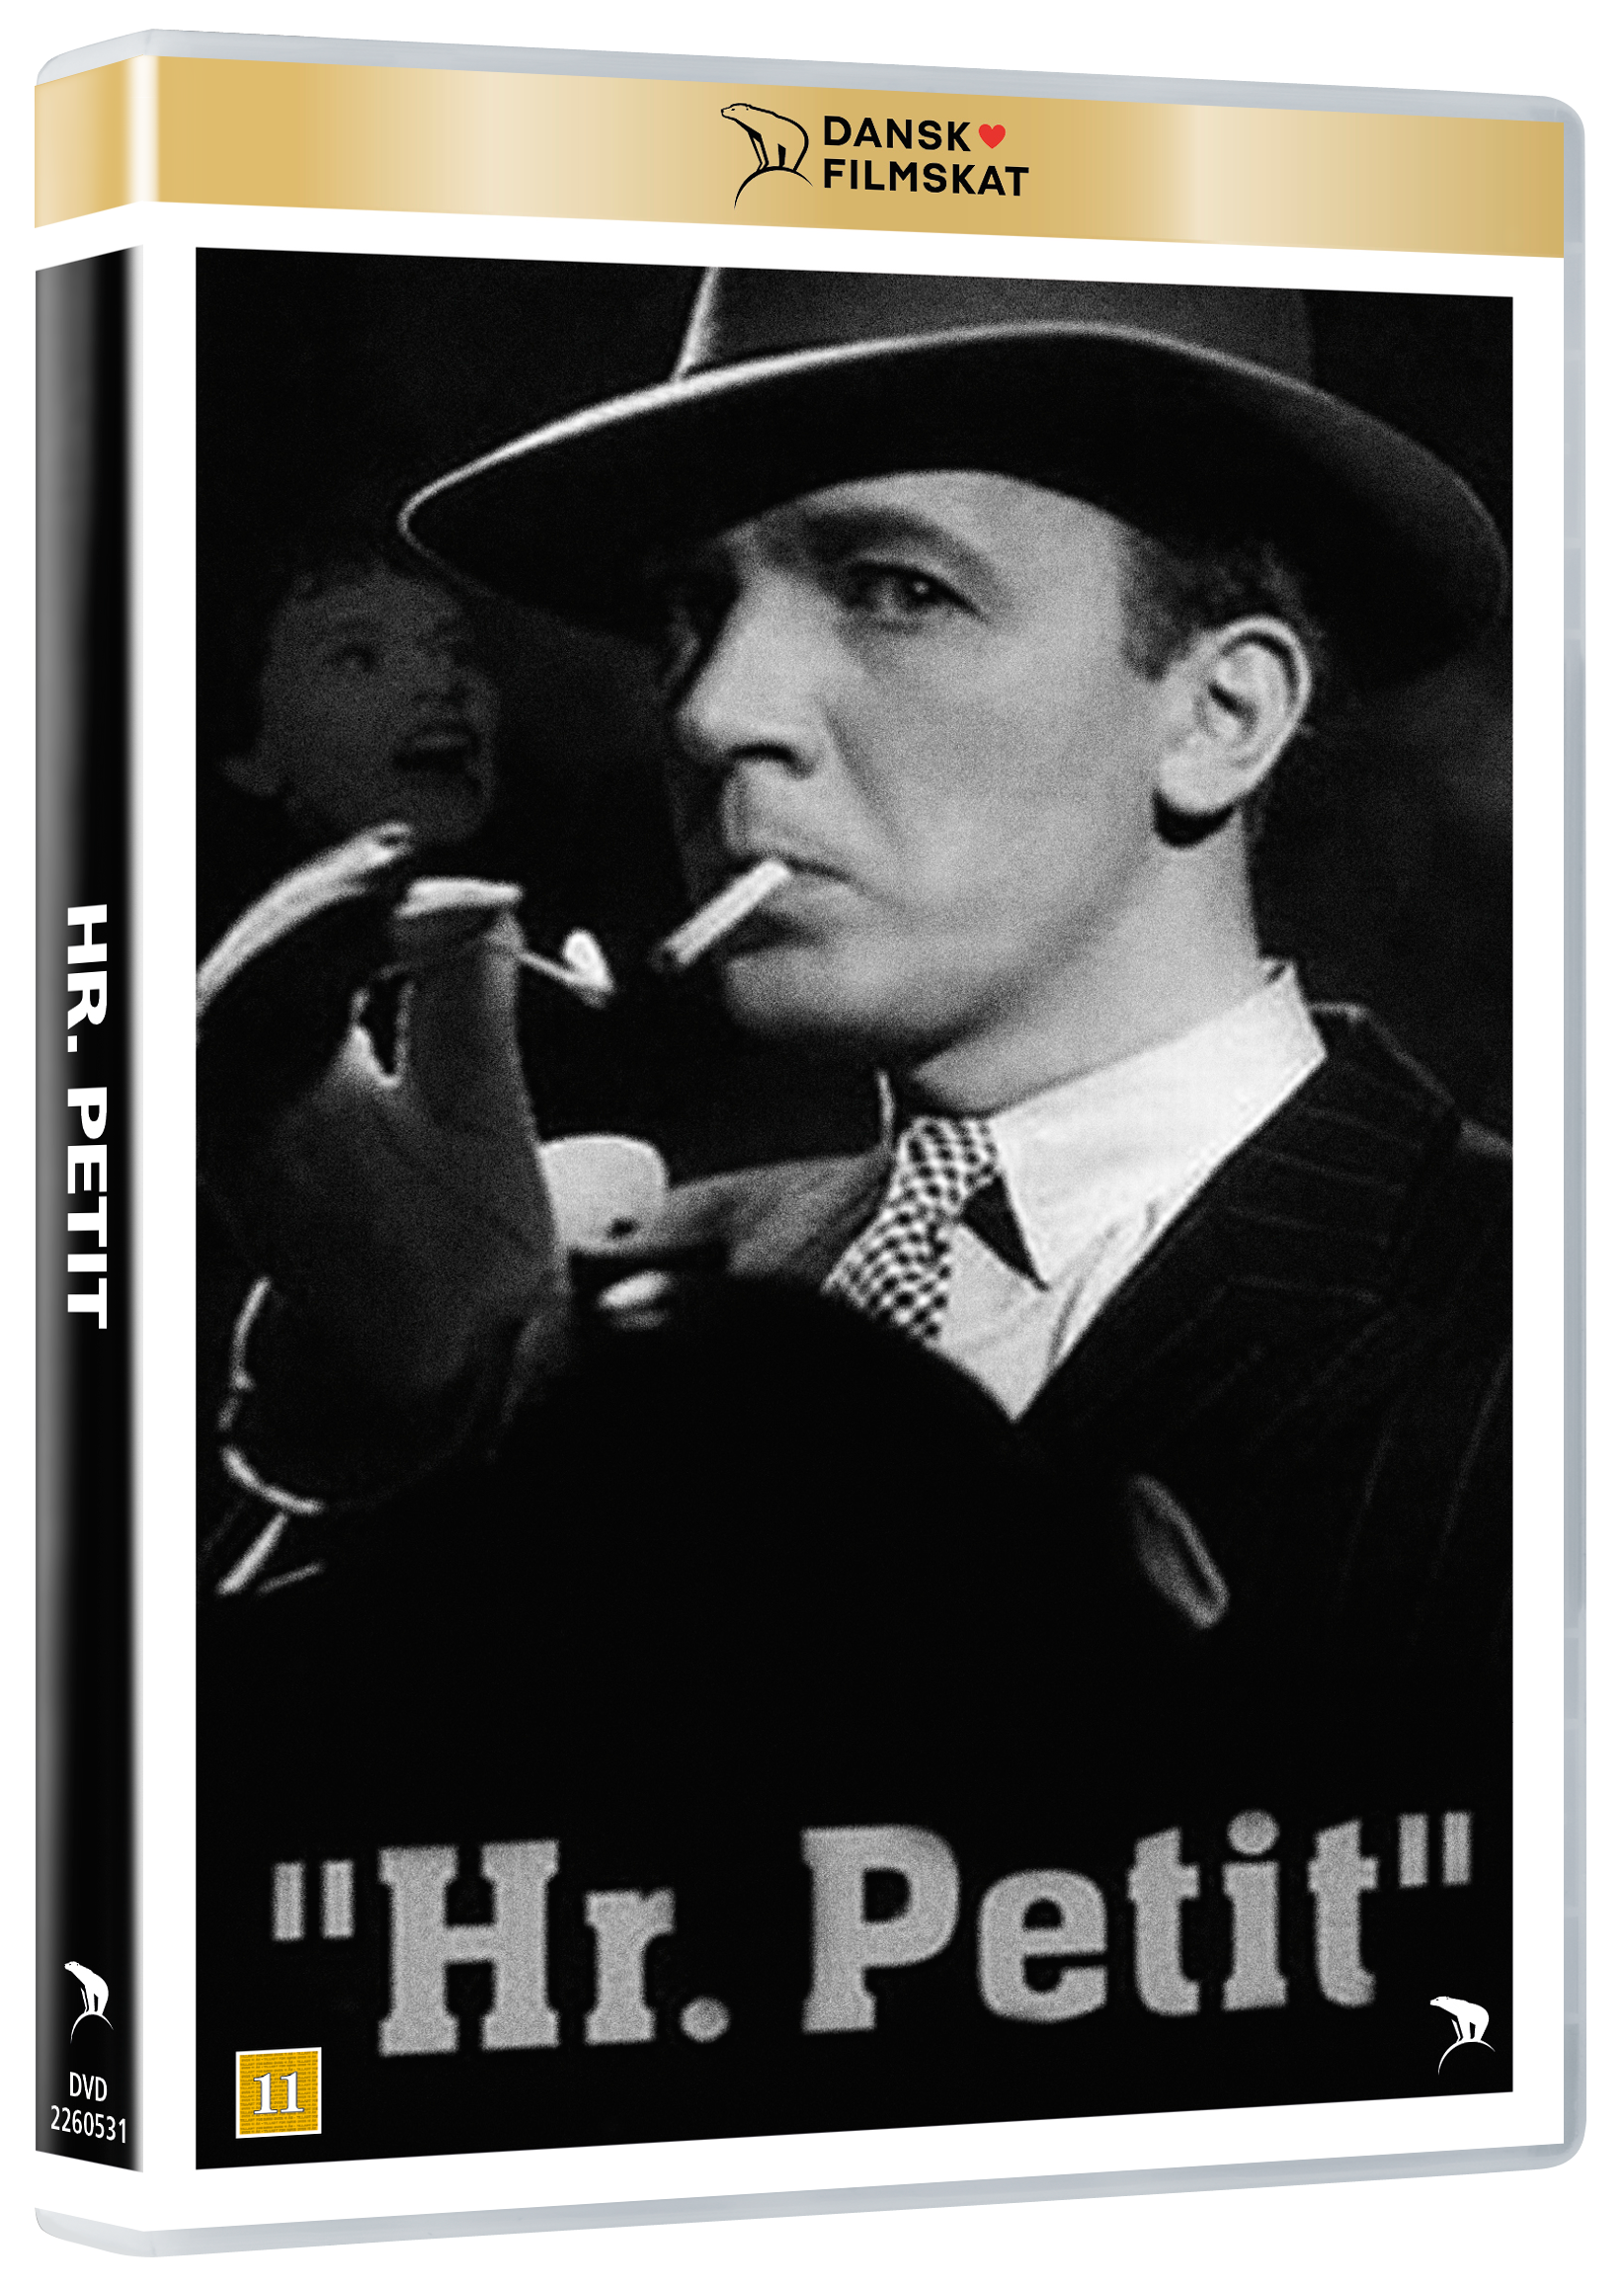 Hr. Petit